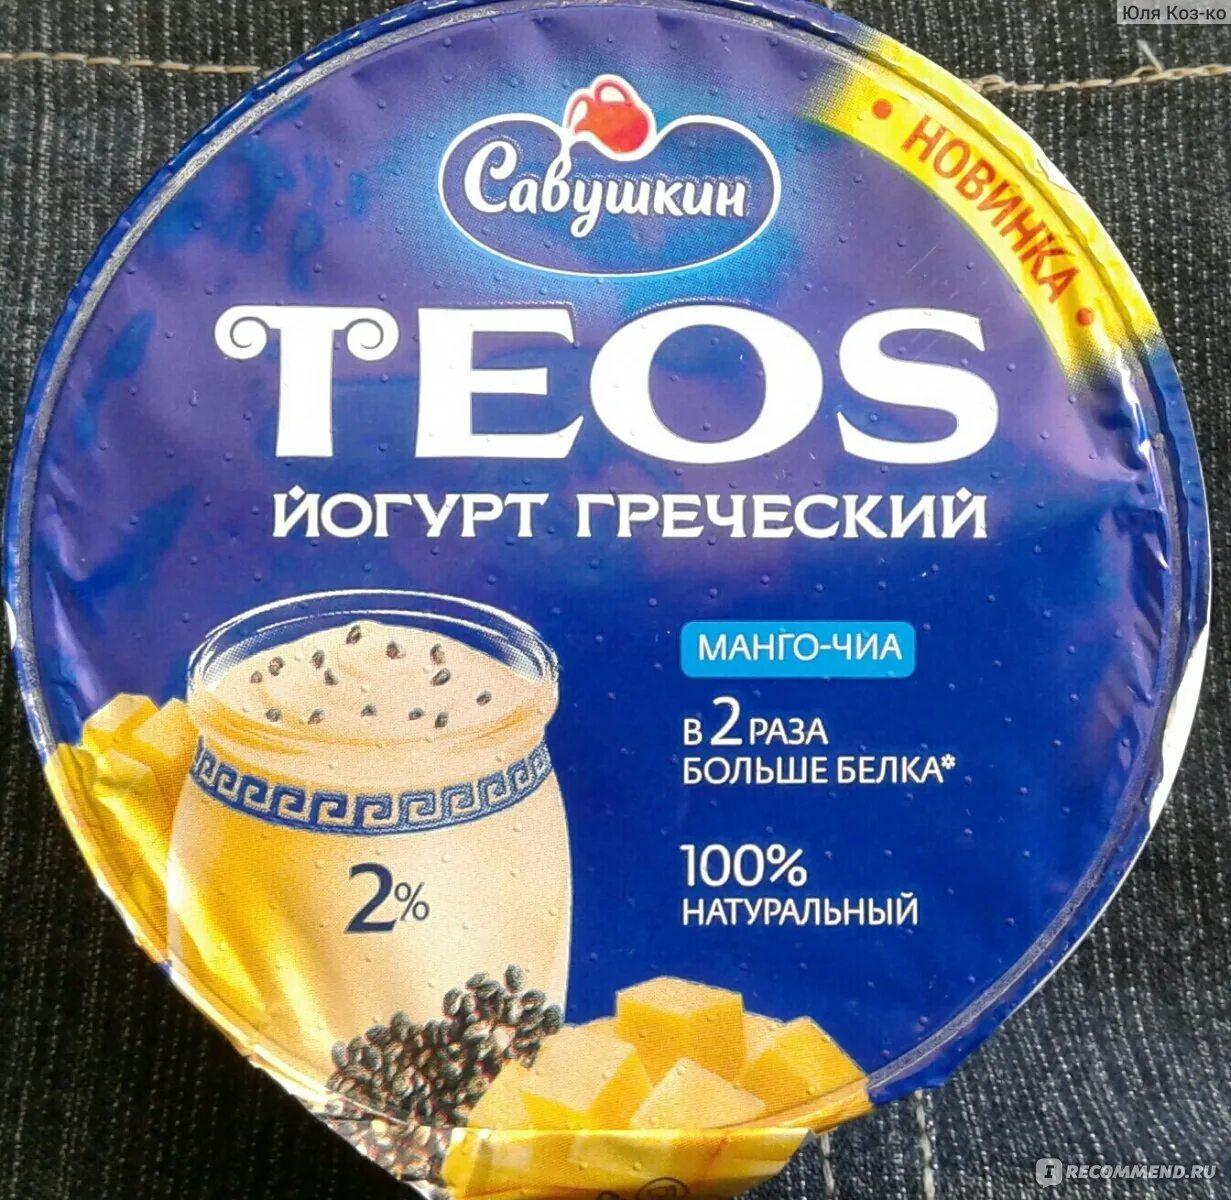 Греческий вкус. Йогурт греческий Teos 2% 140г. Манго-чиа. Савушкин йогурт Теос манго чиа. Греческий йогурт Теос вкусы. Савушкин продукт йогурт Теос.